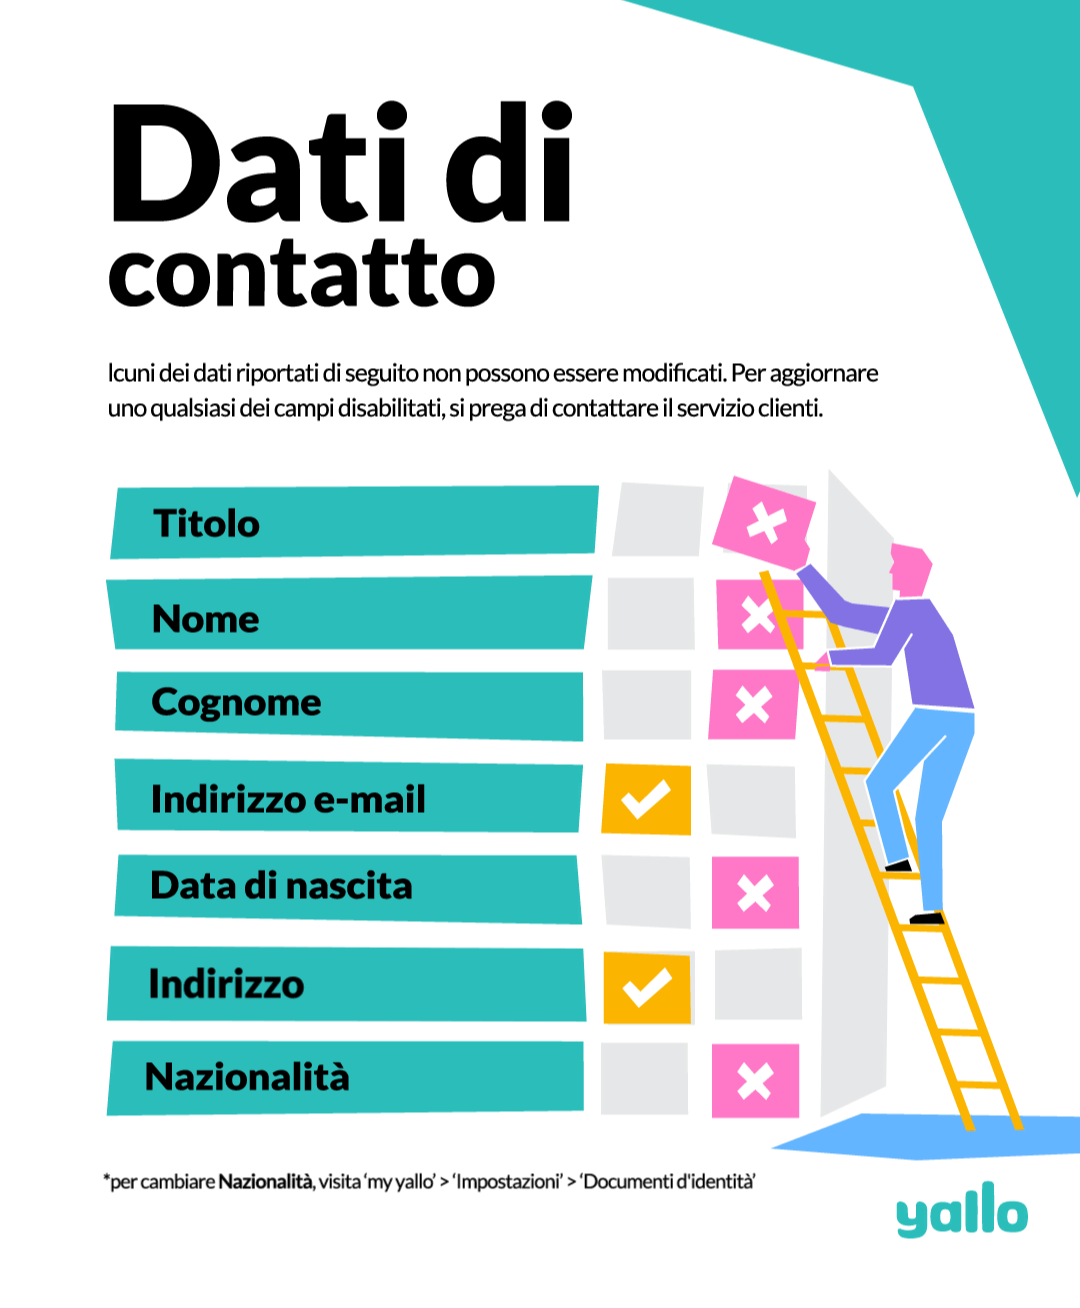 Yallo-contact-info-italian.gif